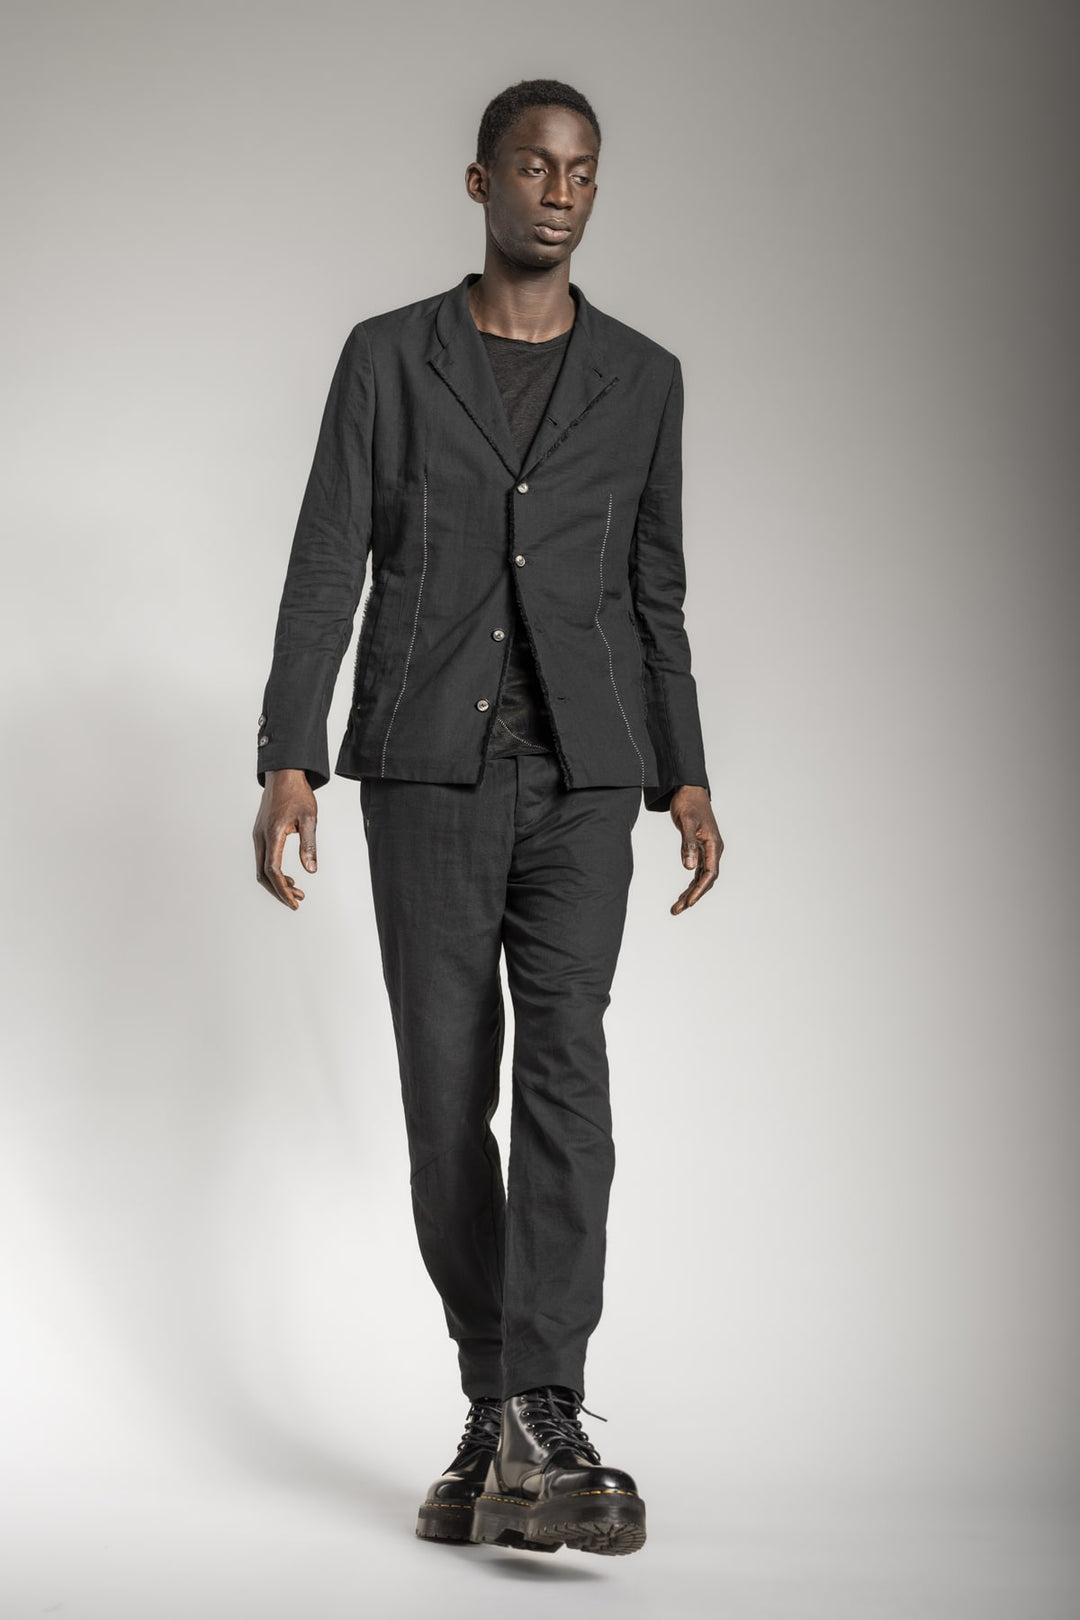 Men's designer suits - Avant-garde fashion outfits